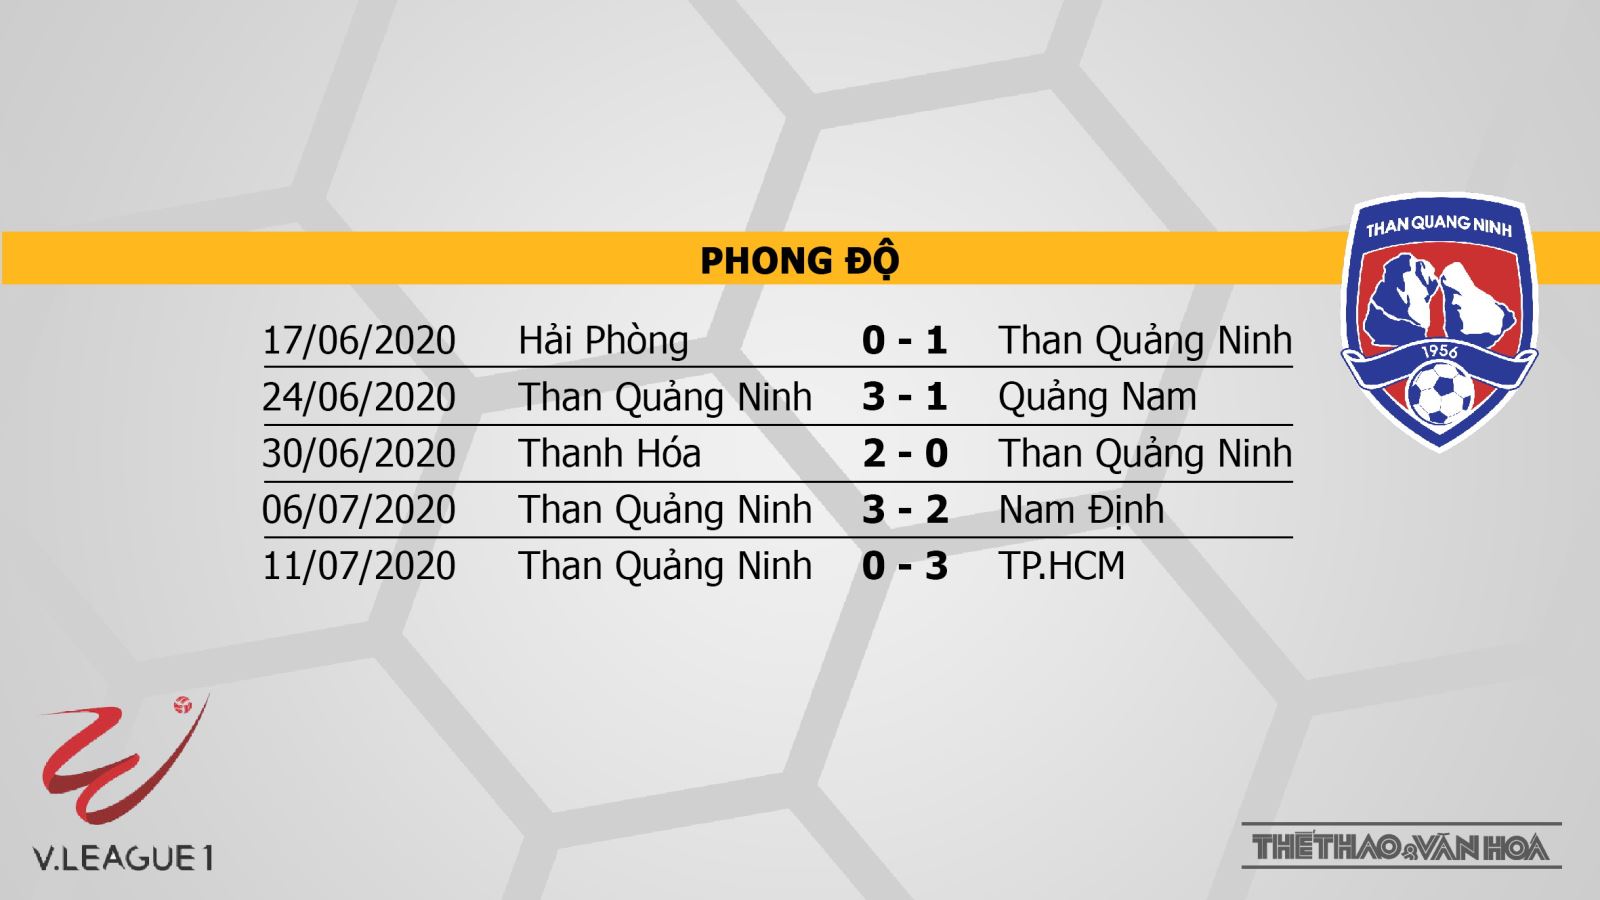 SHB Đà Nẵng vs Than Quảng Ninh, nhận định bóng đá SHB Đà Nẵng vs Than Quảng Ninh, nhận định, dự đoán, kèo bóng đá, nhận định bóng đá, lịch thi đấu bóng đá